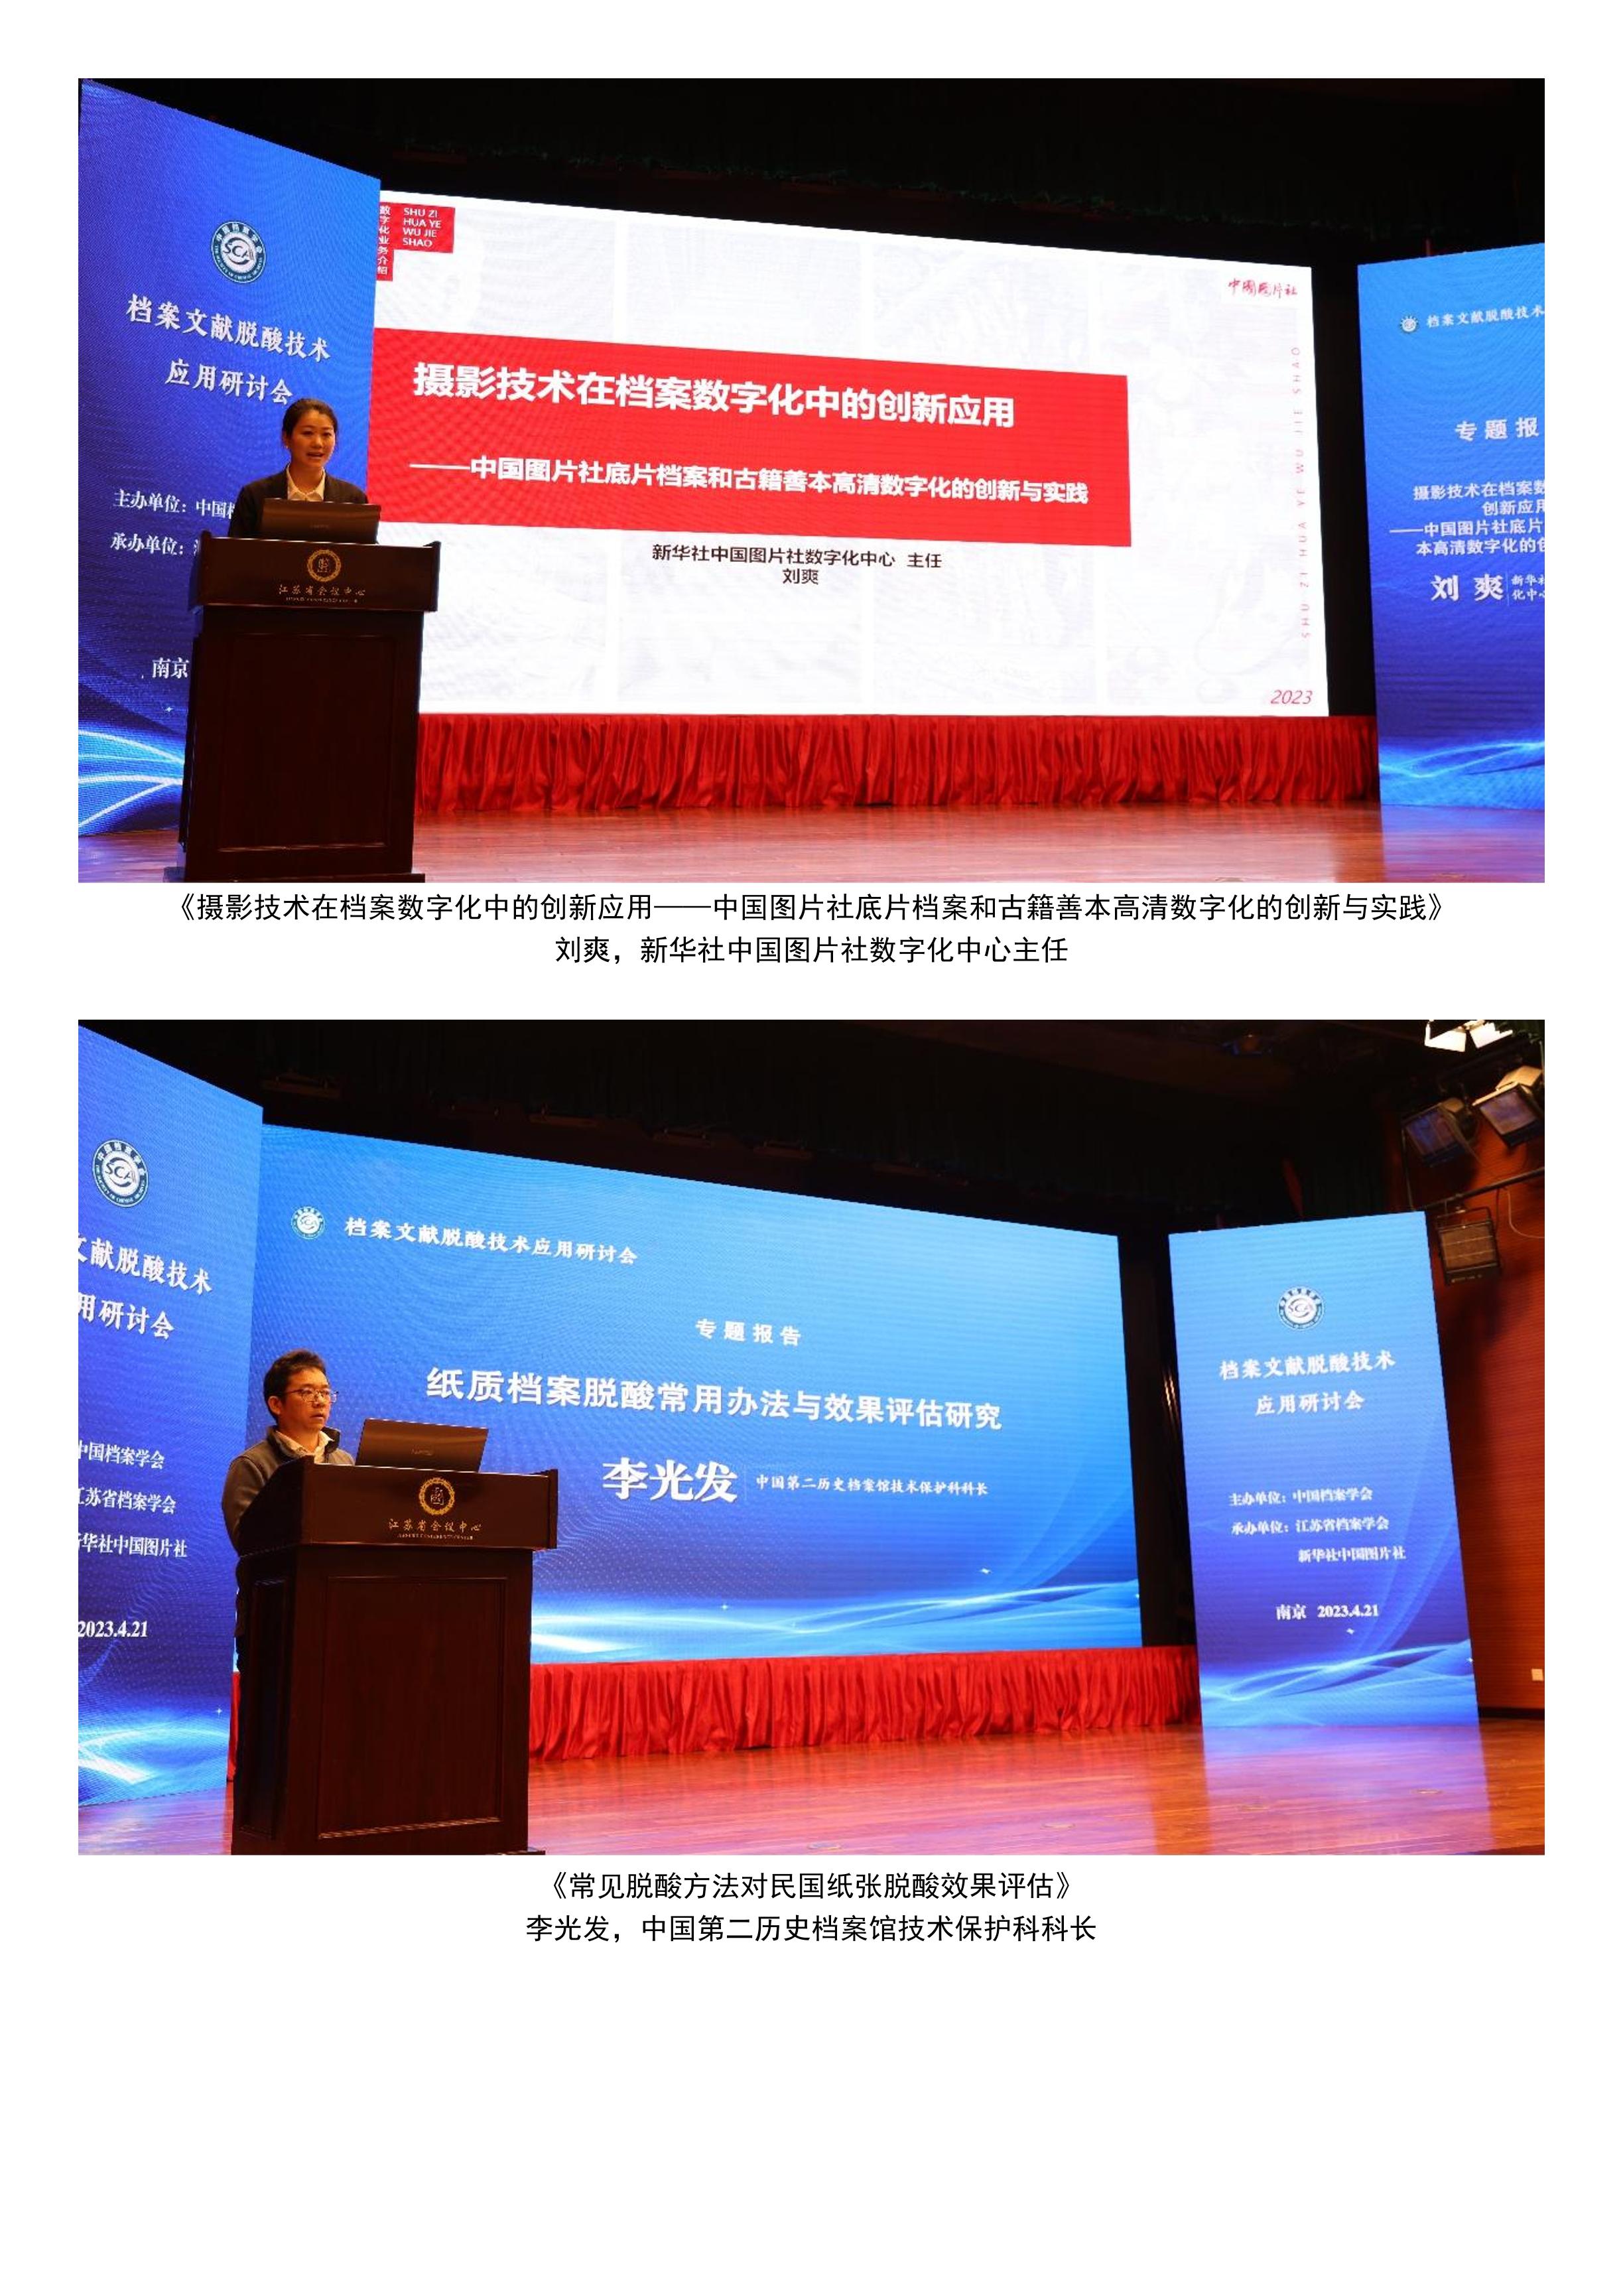 档案文献脱酸技术应用研讨会在南京召开-3